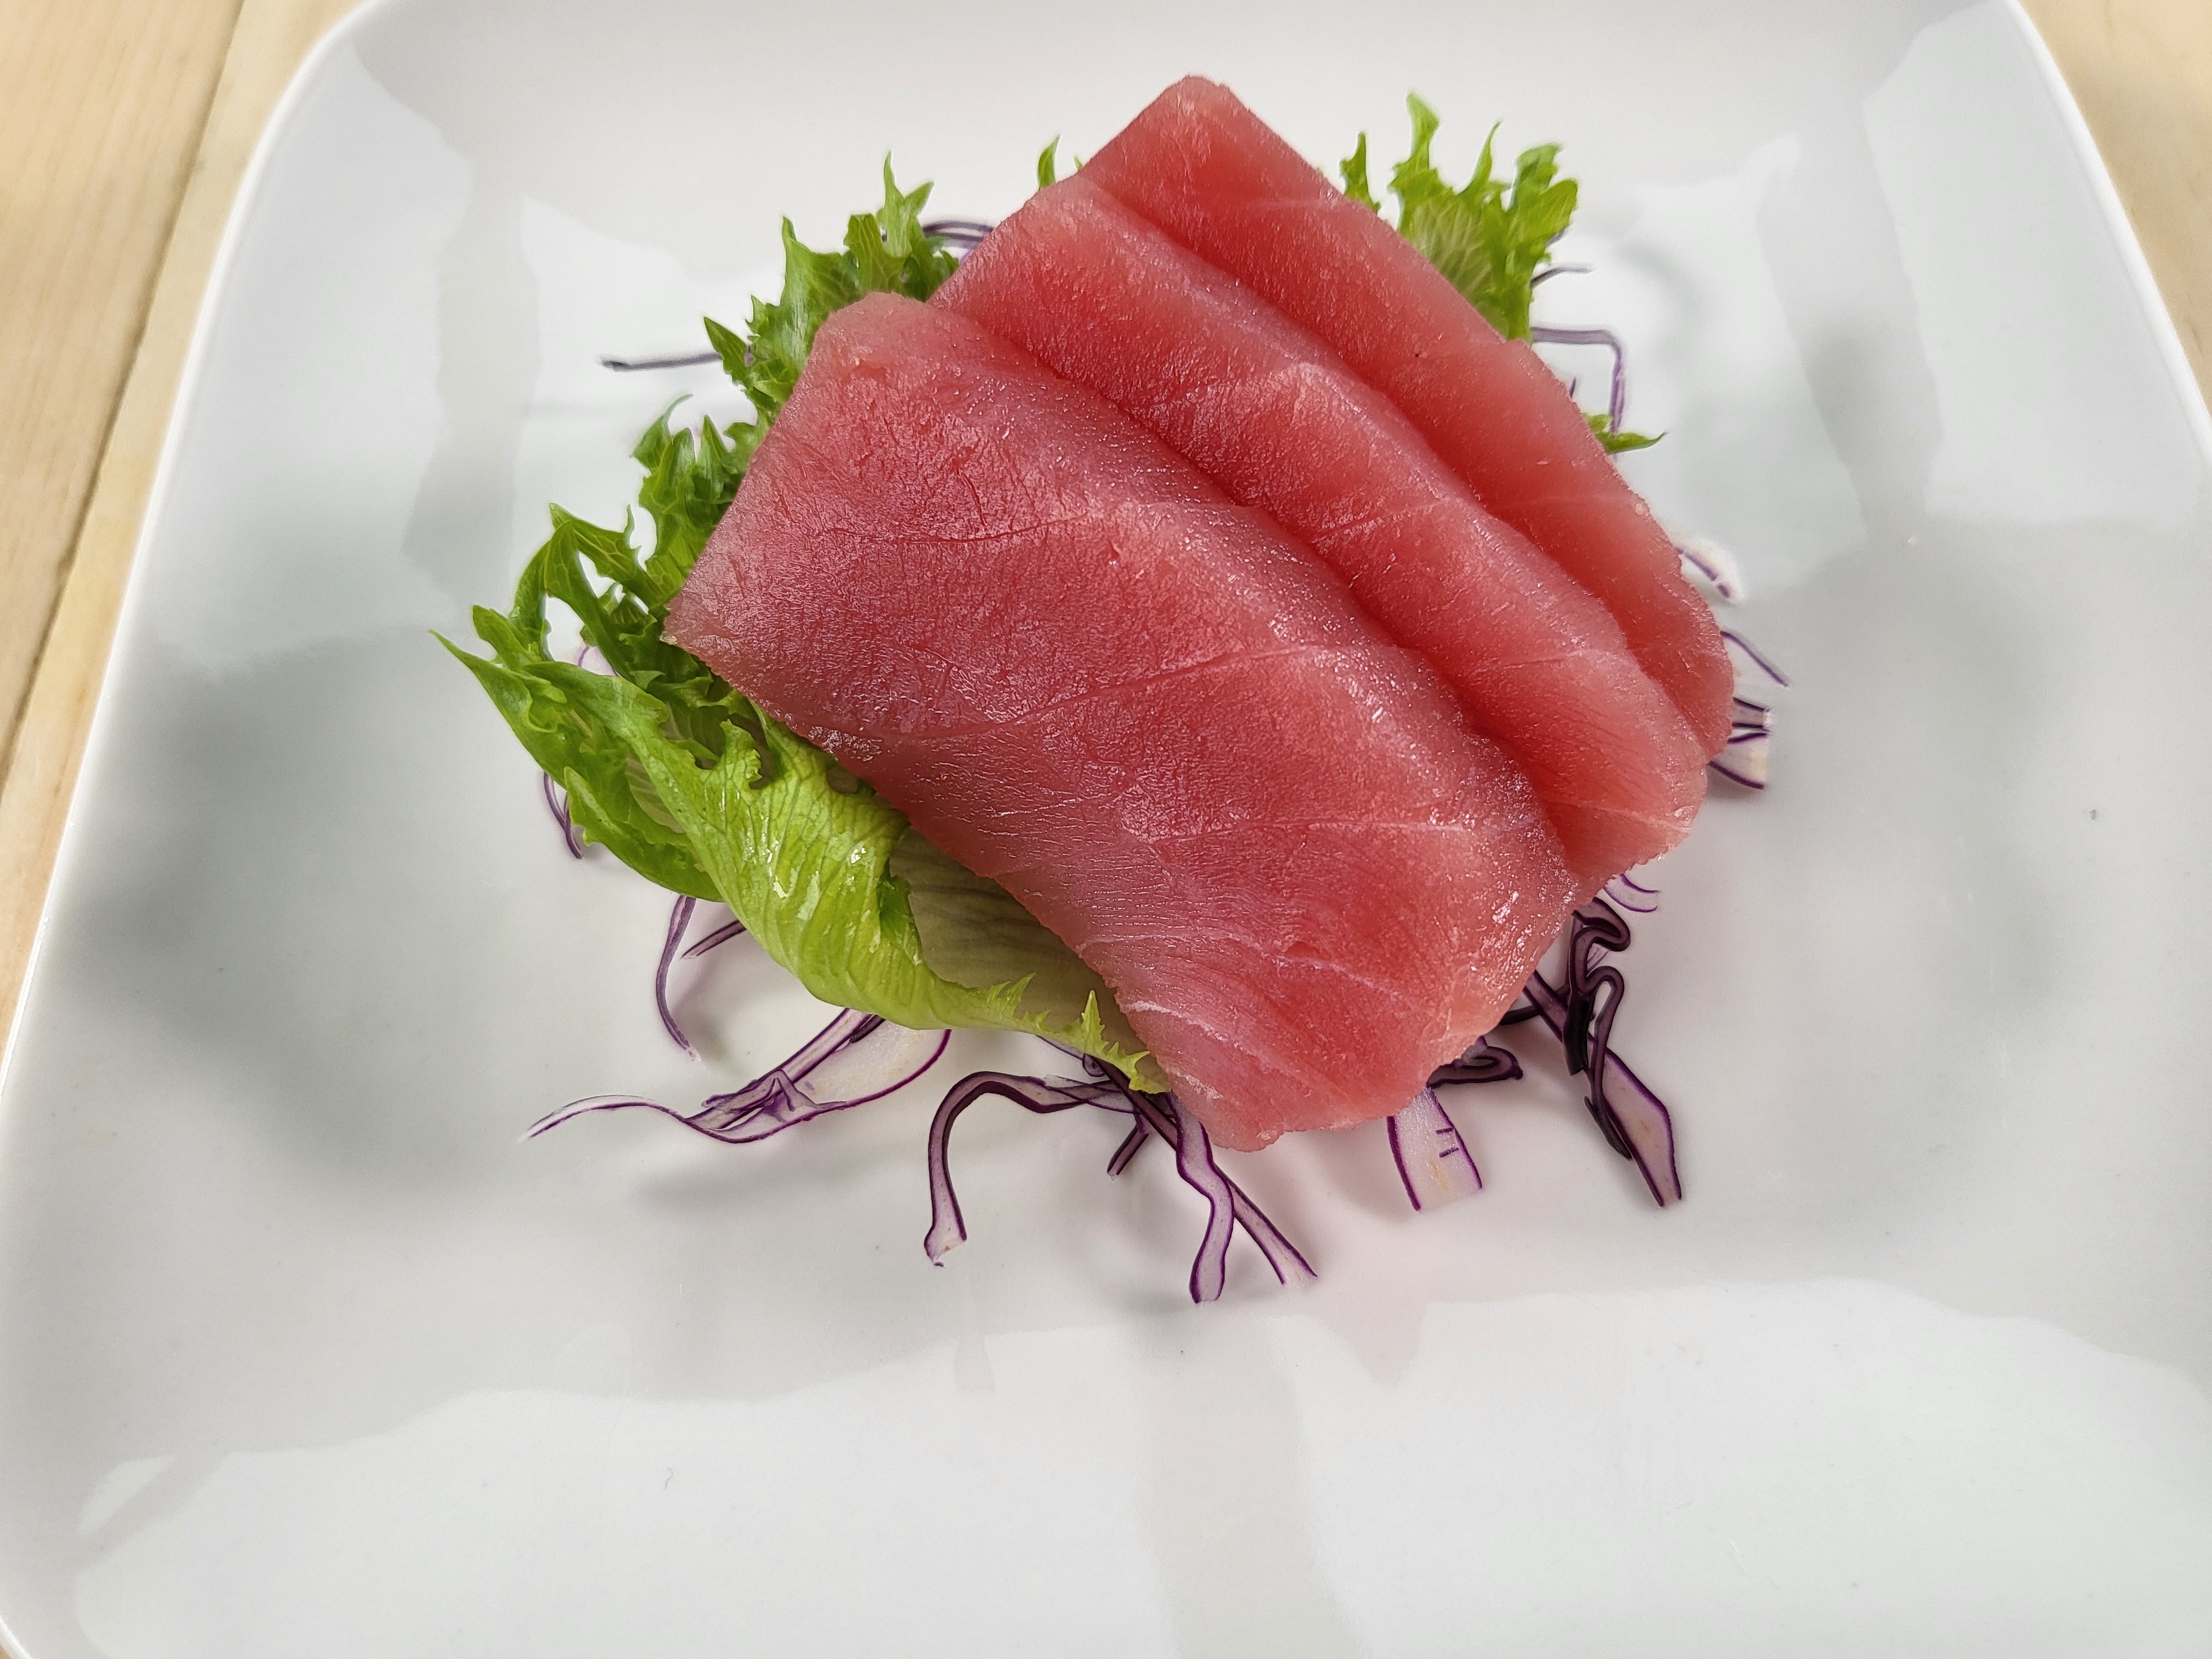 Sashimi 9 morceaux / sashimi 9 pcs